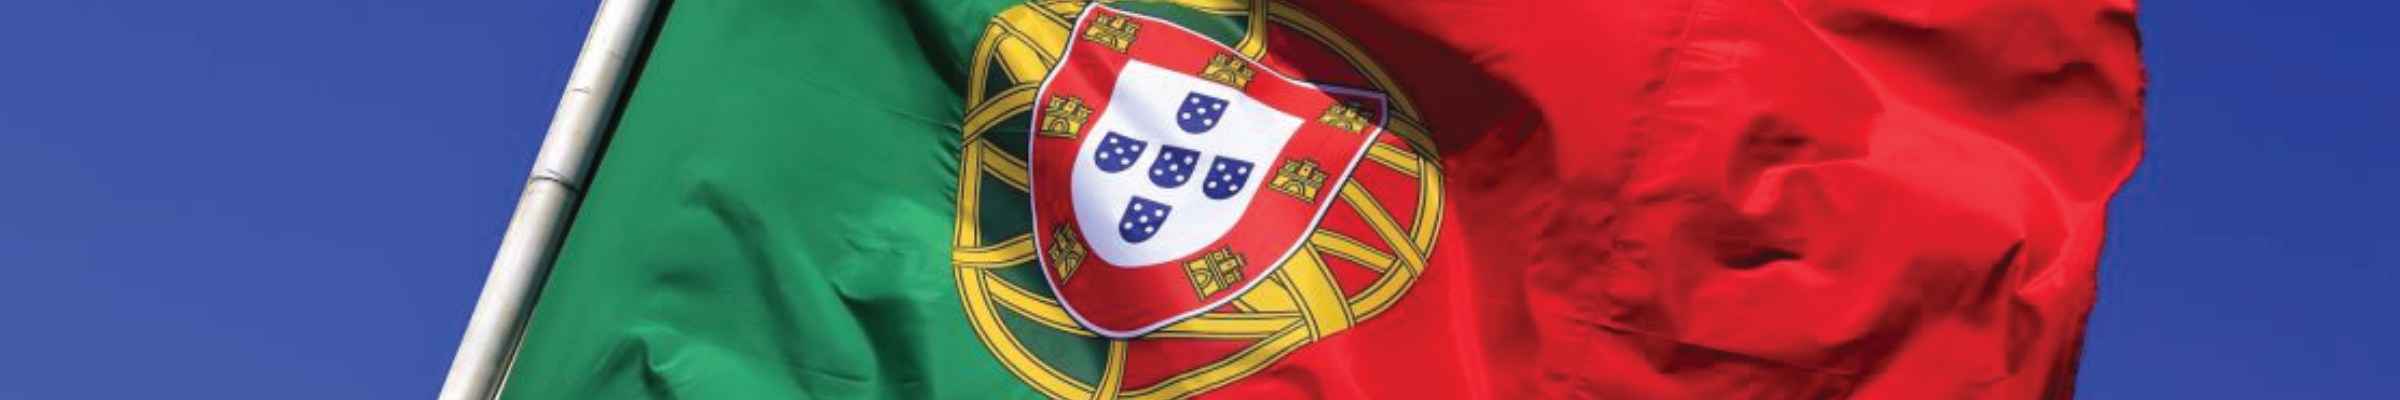 Vins du Portugal : Découvrez notre sélection !